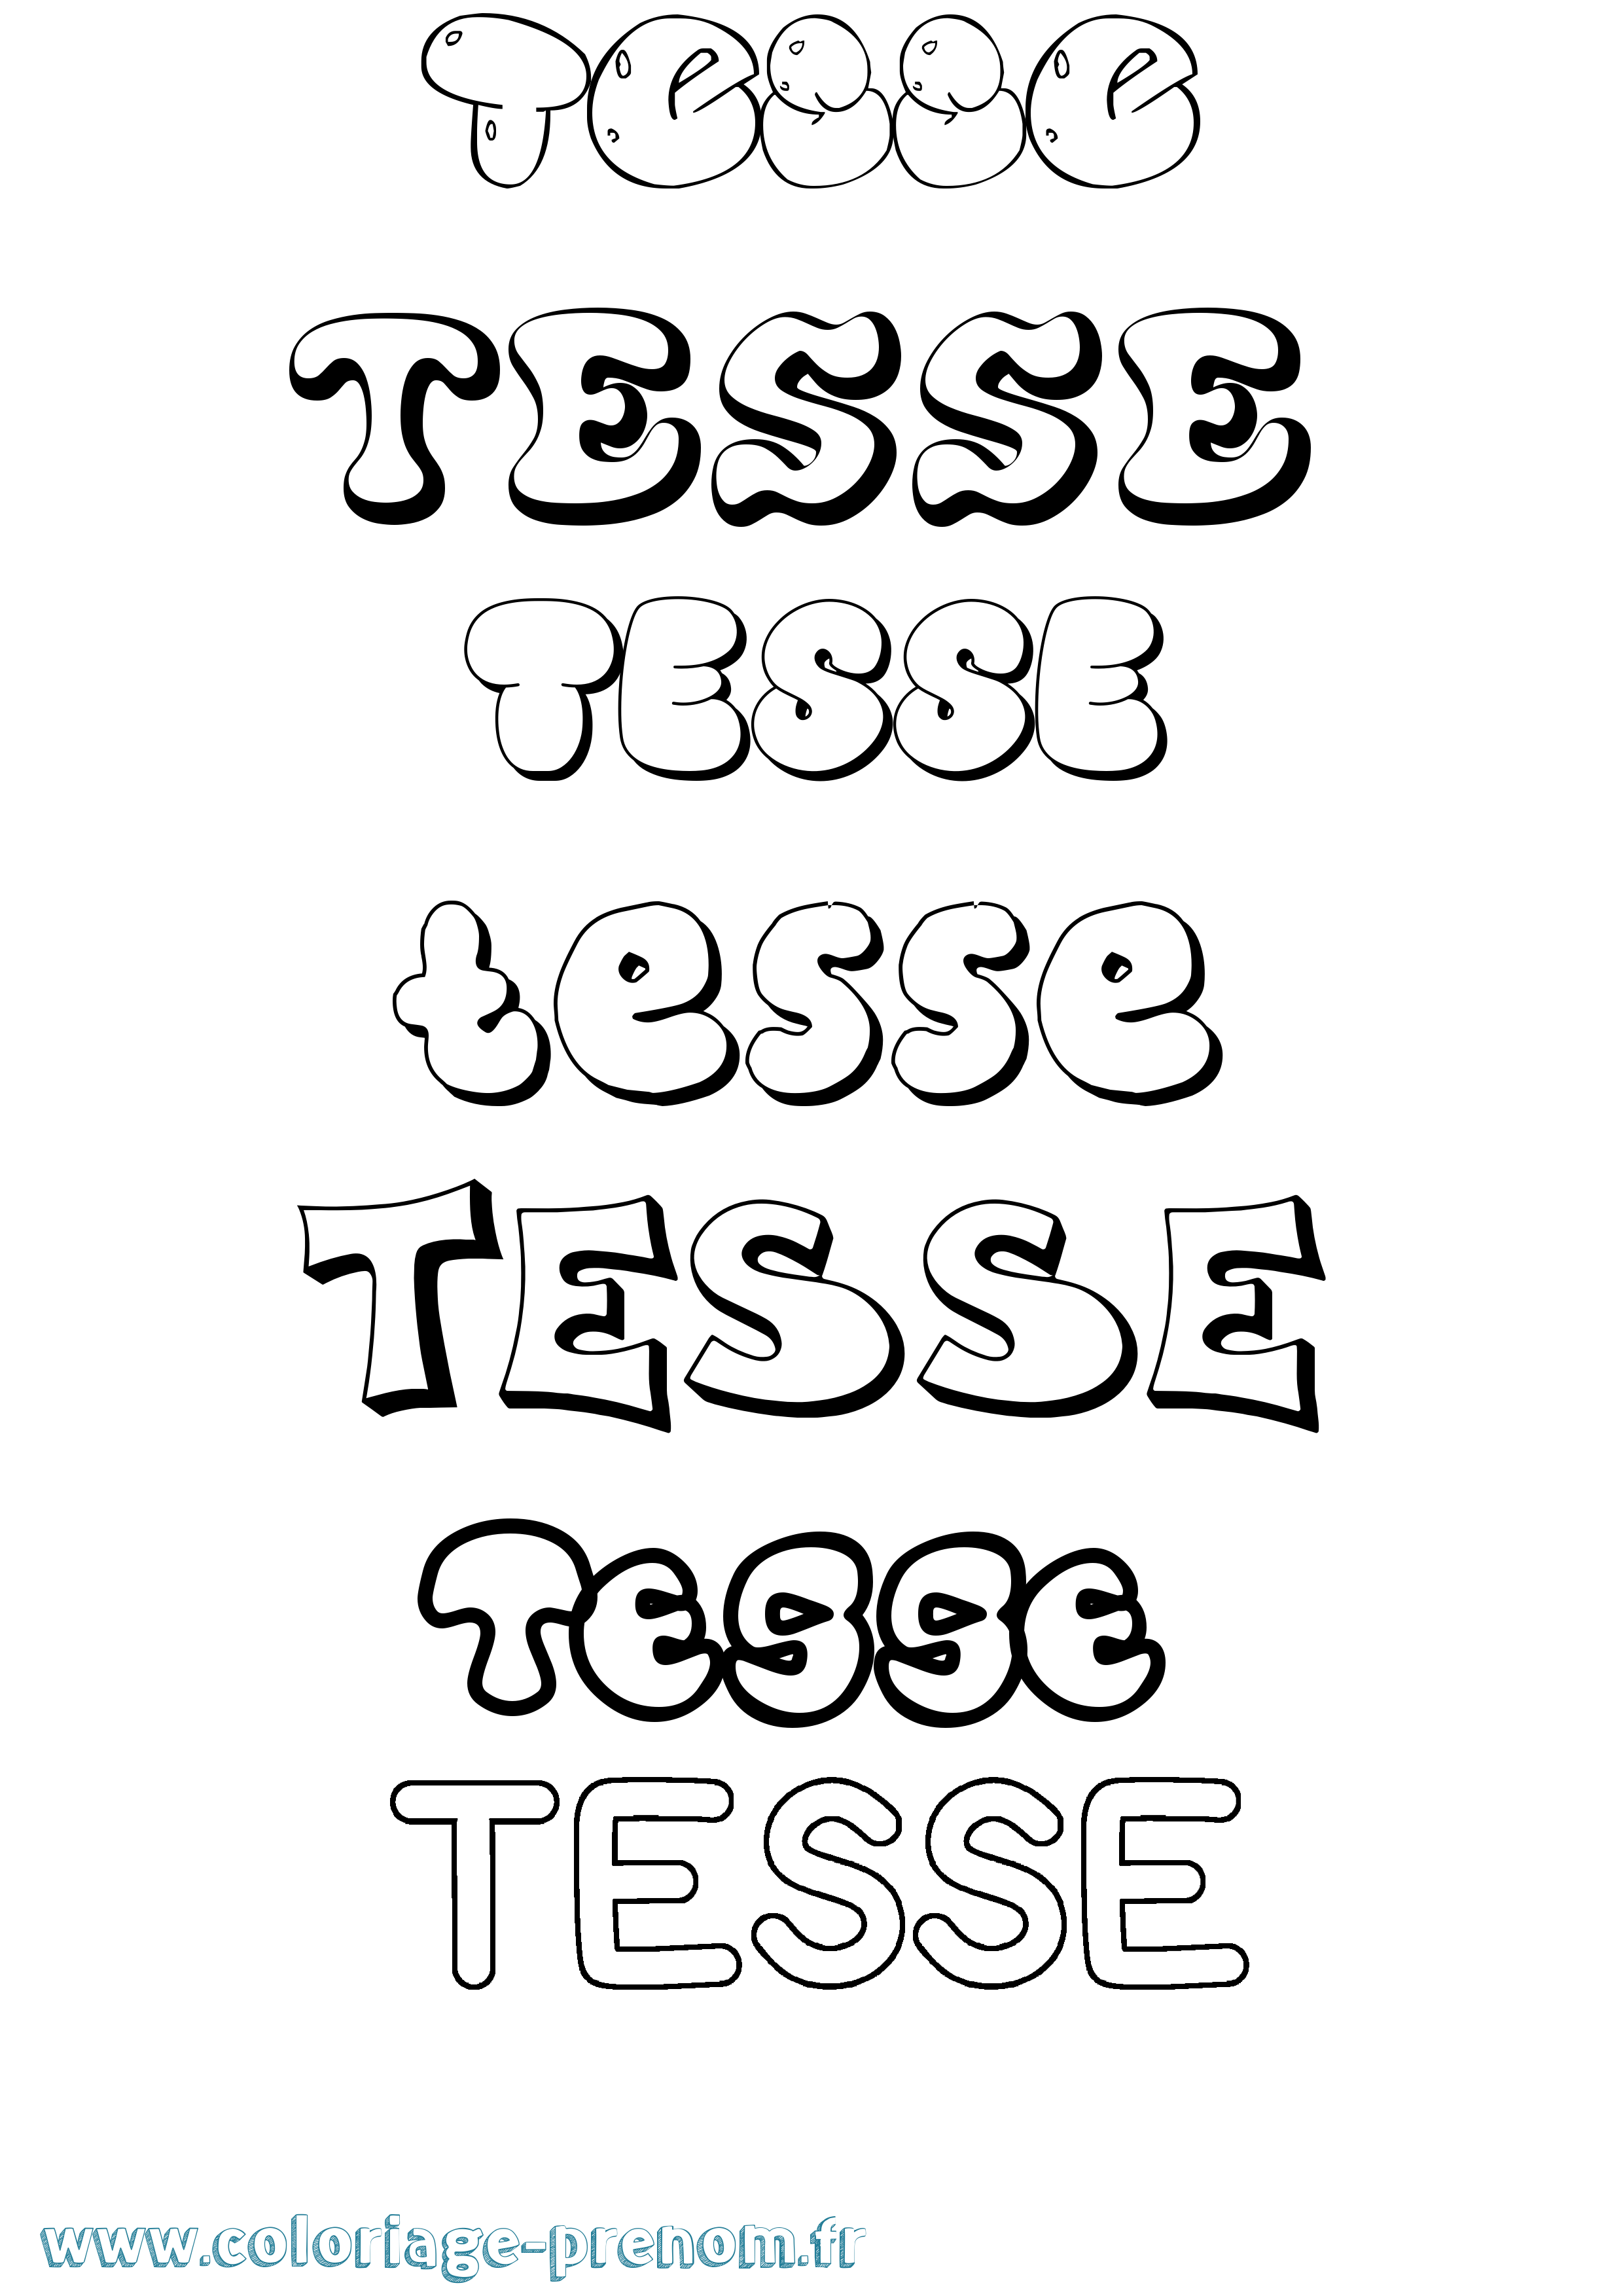 Coloriage prénom Tesse Bubble